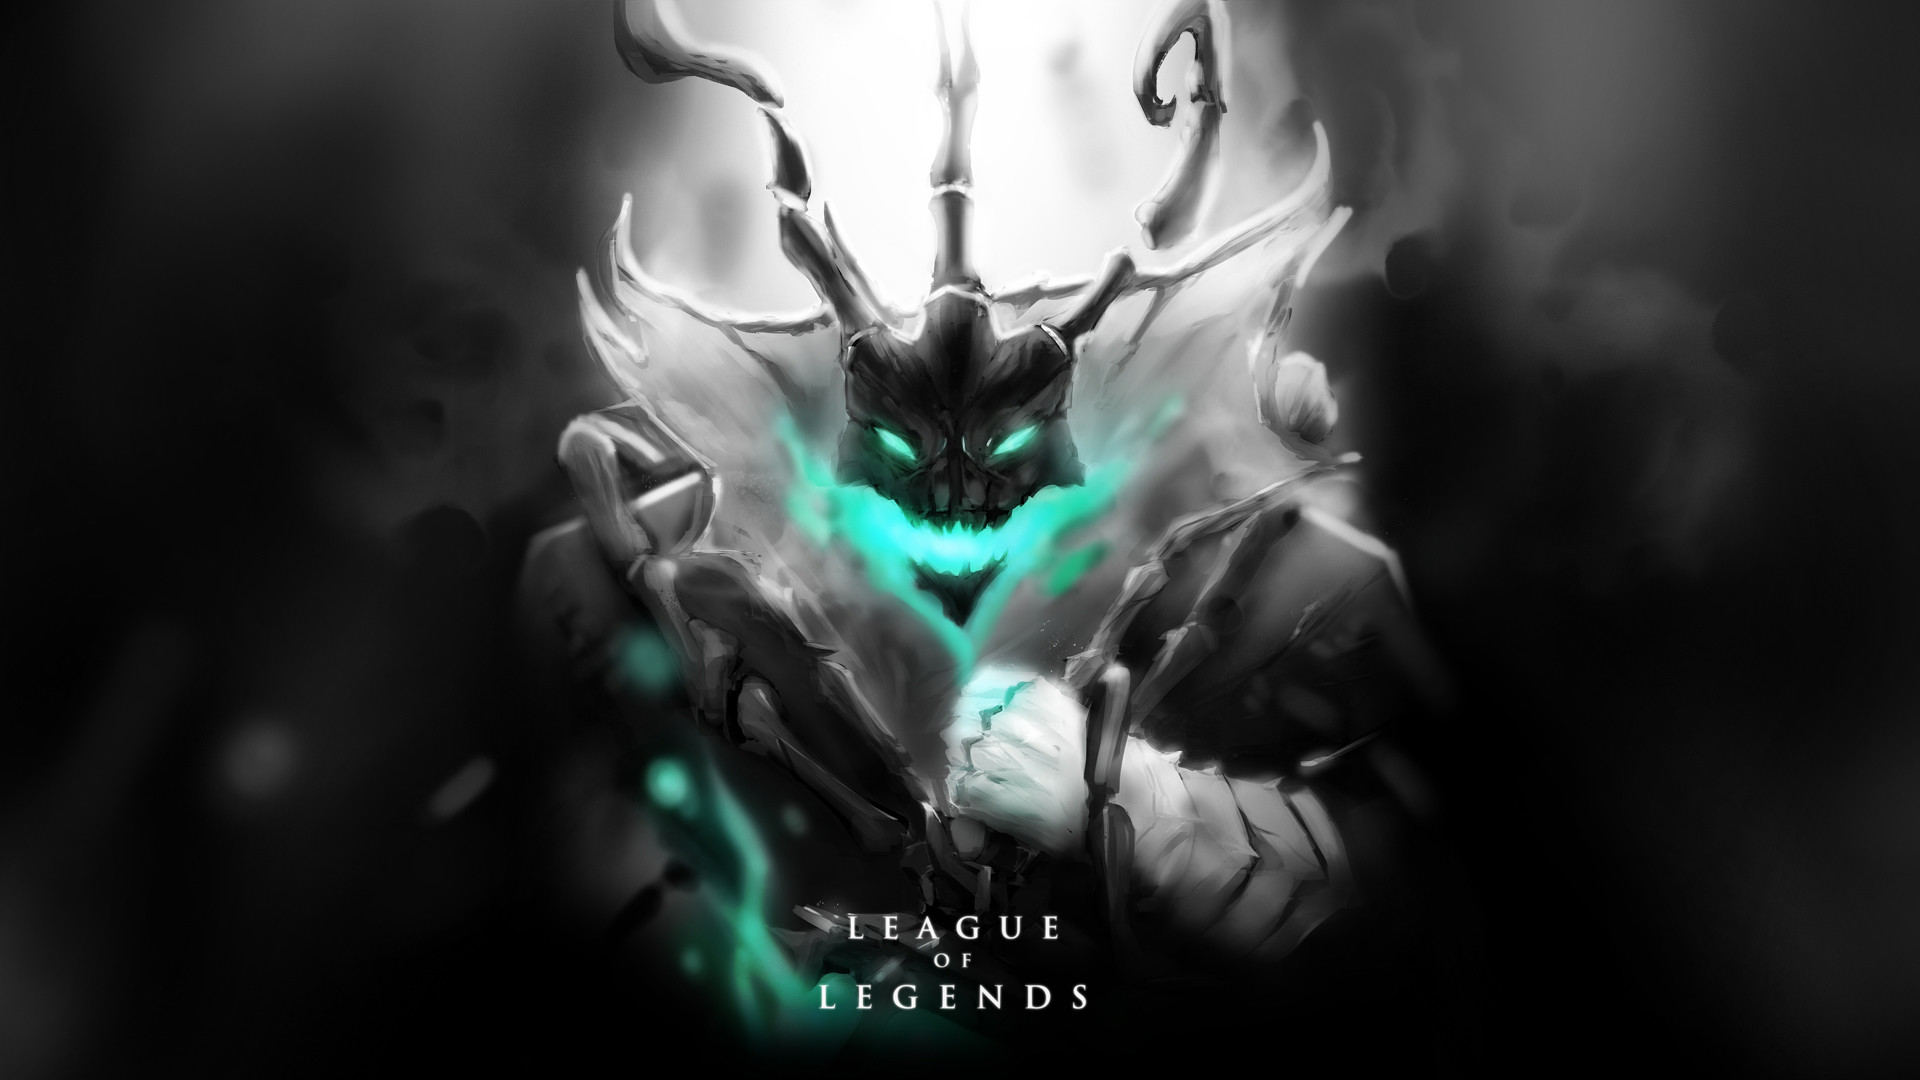 League of Legends 1080p Wallpaper (76+ images)